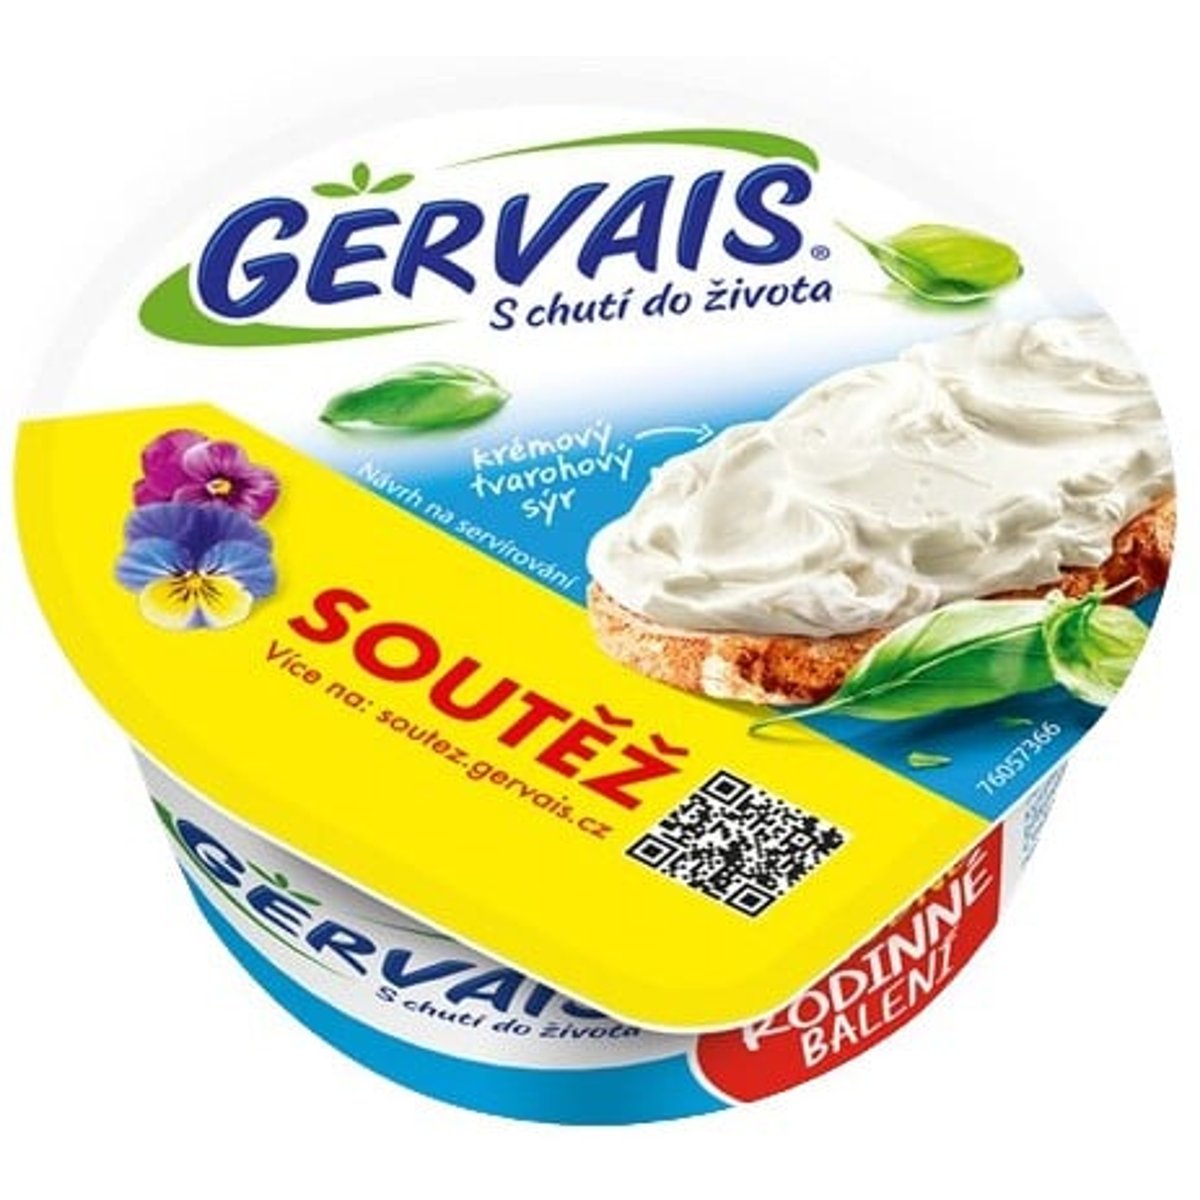 Gervais Original krémový tvarohový sýr